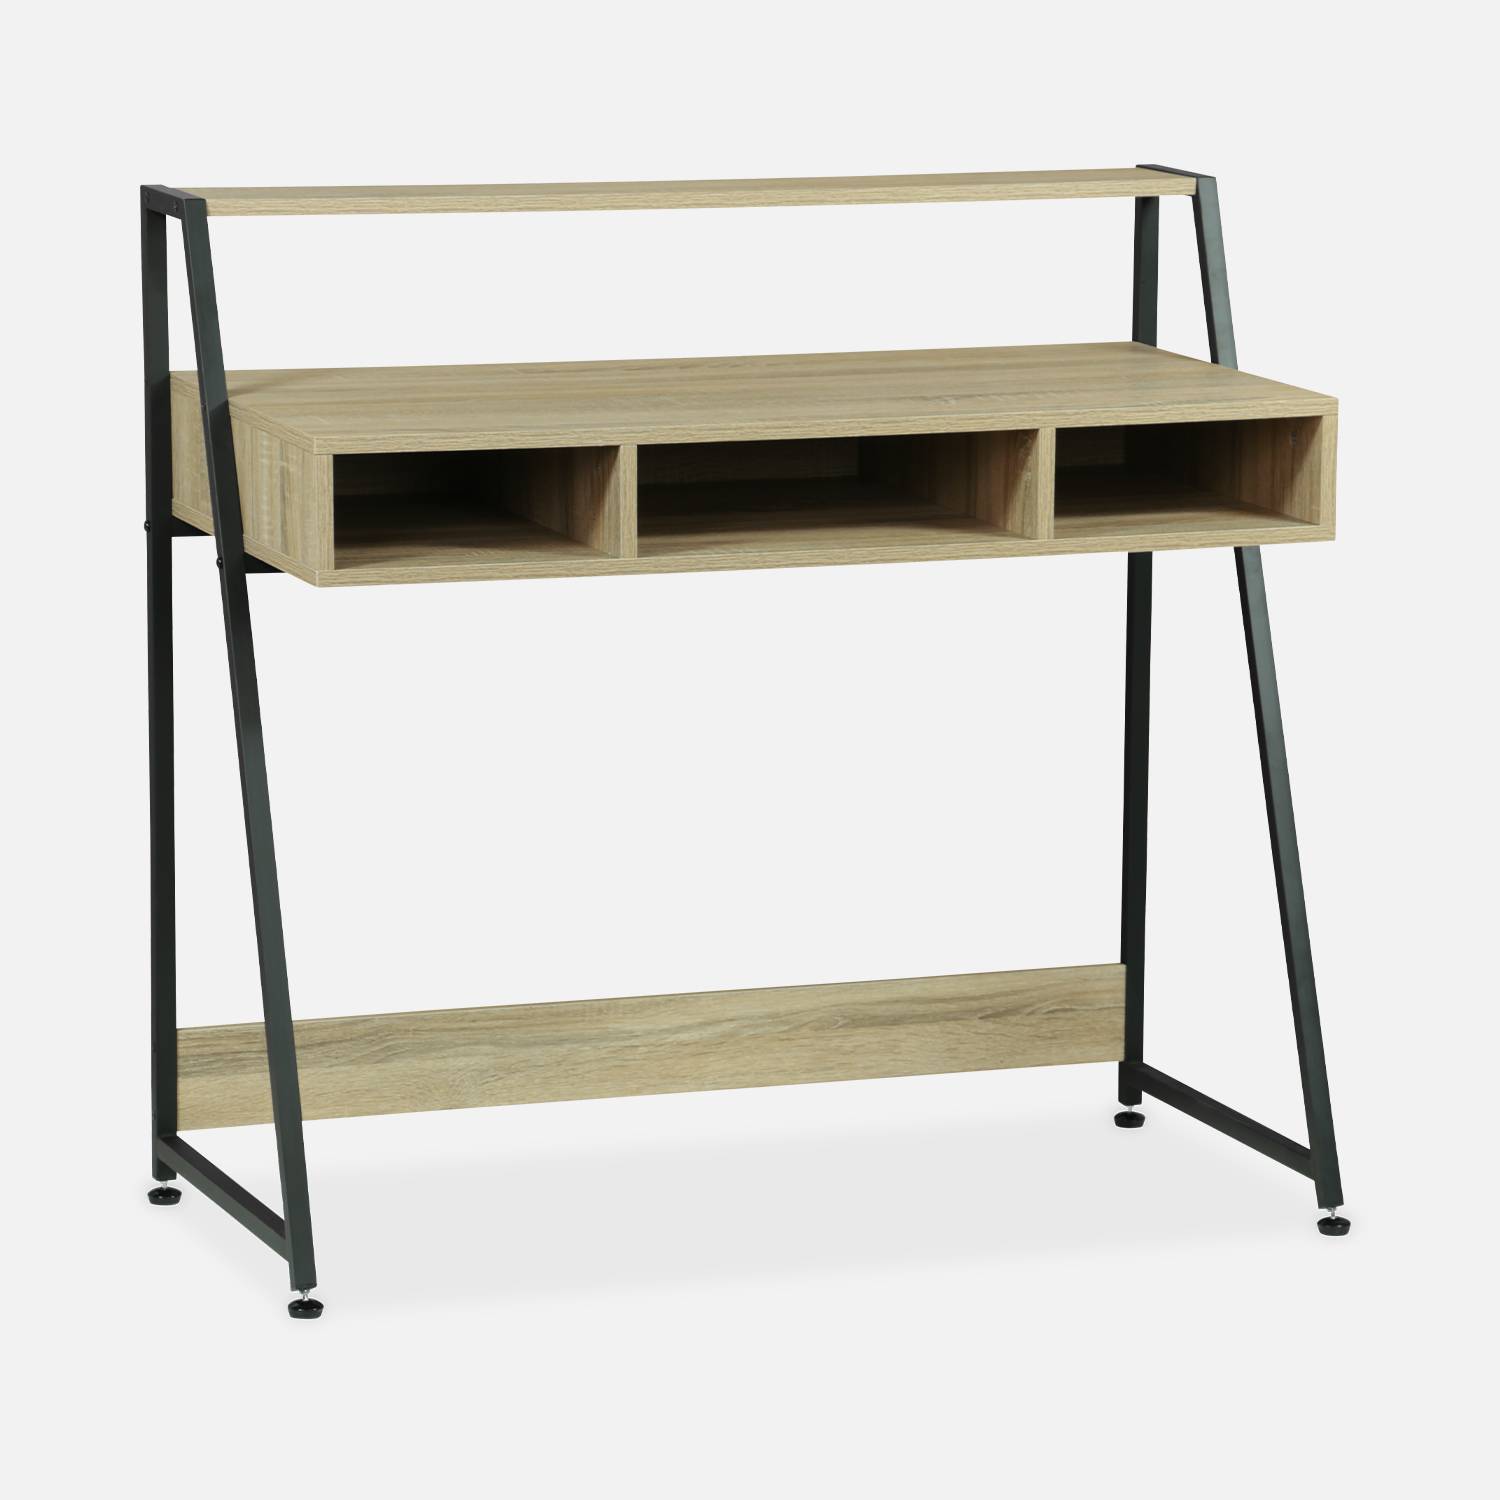 Escritorio - LOFT - 3 compartimentos de almacenamiento - 1 estante - decoración de madera y metal - L 100 x l 48 x H 94,5cm,sweeek,Photo2